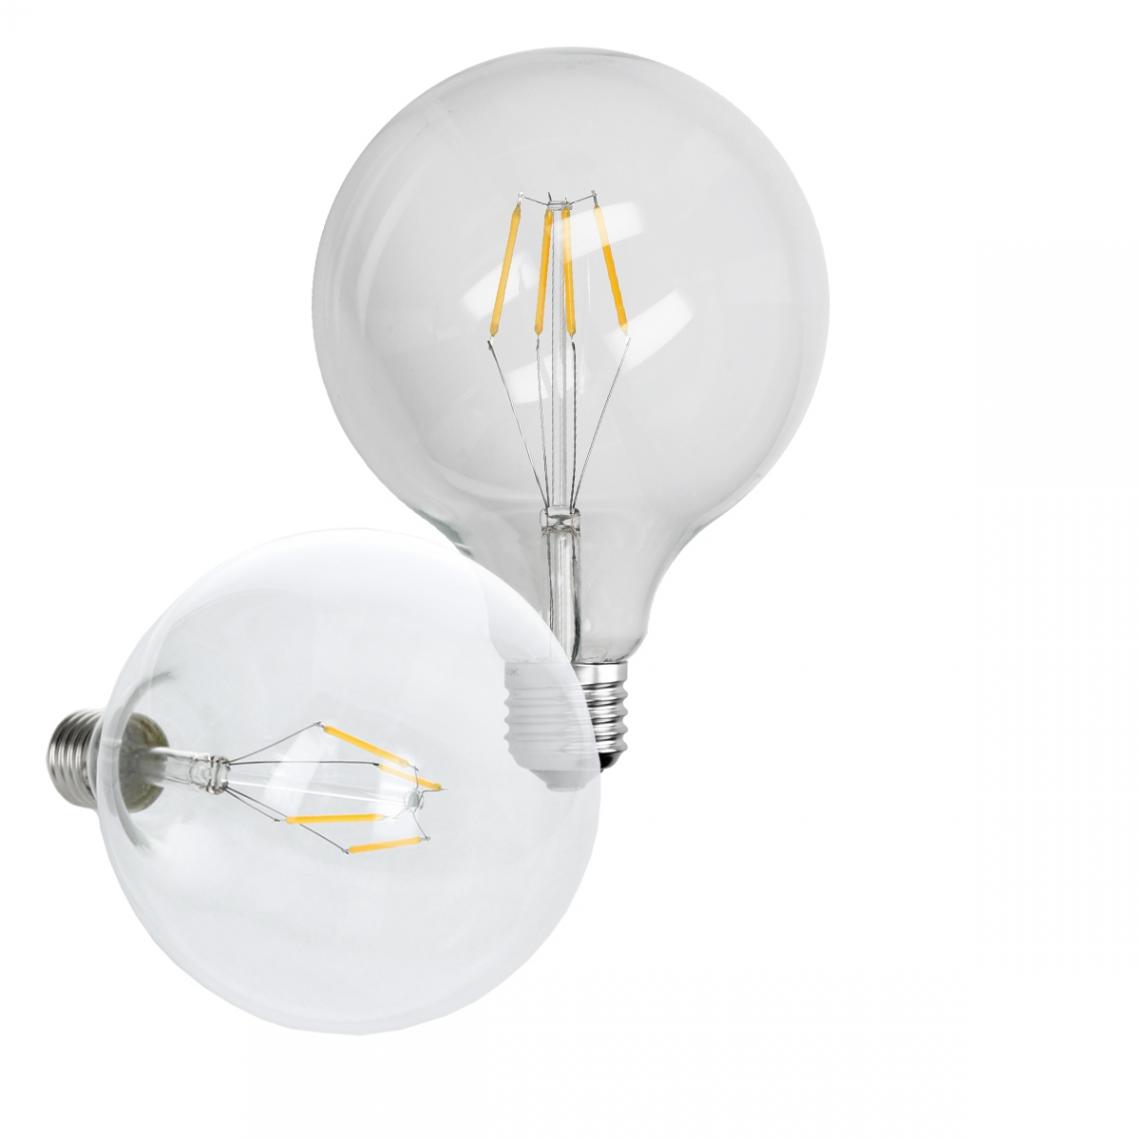 Ecd Germany - 12 x ampoule LED gros filament E27 4W 125 mm blanc chaud - Ampoules LED